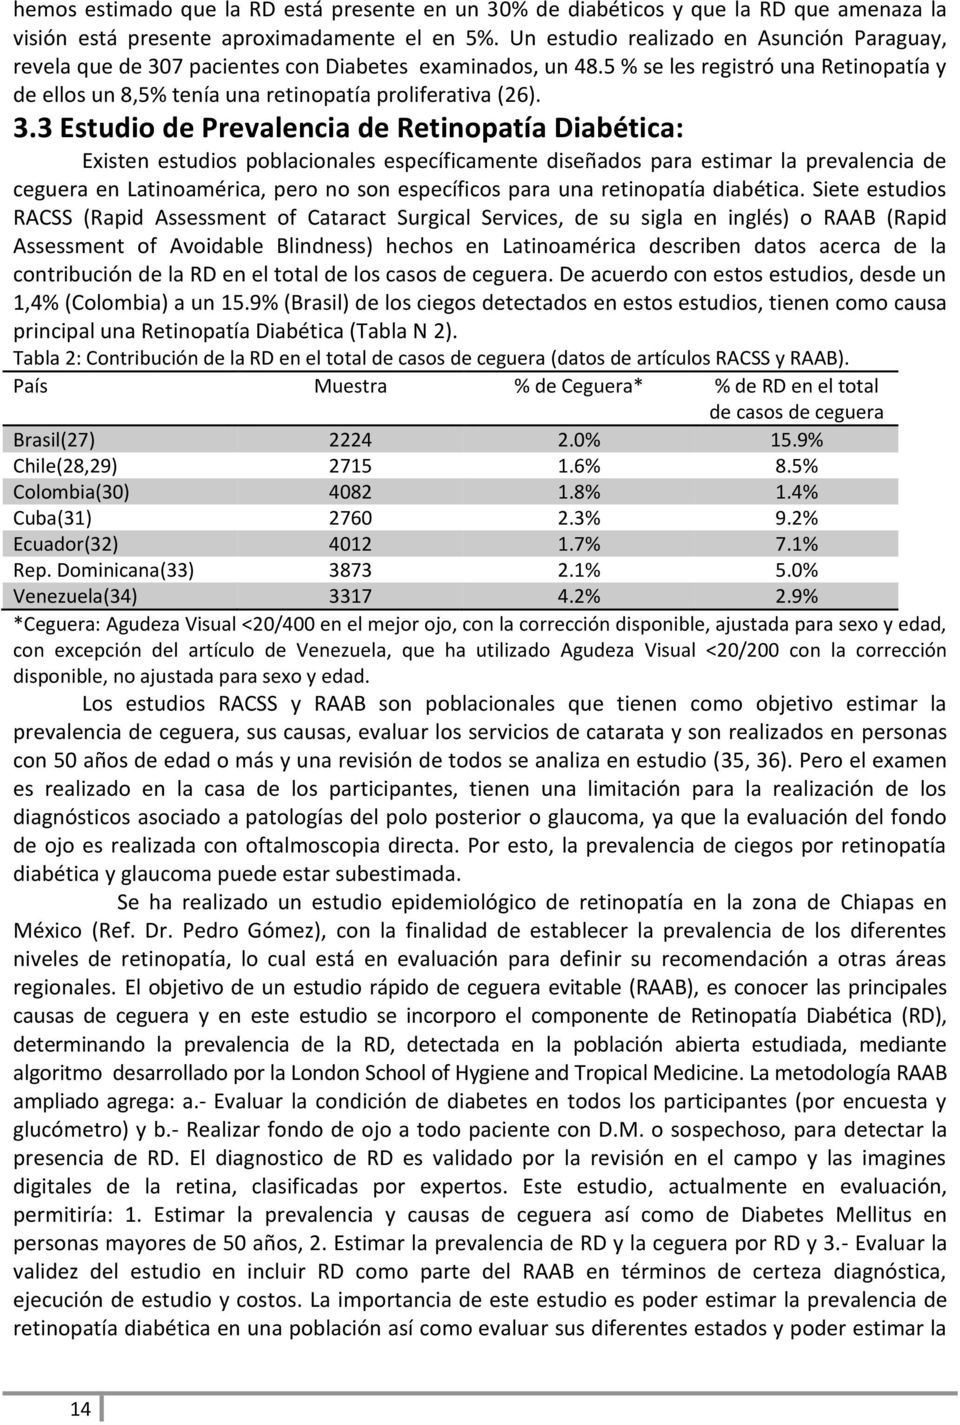 3.3 Estudio de Prevalencia de Retinopatía Diabética: Existen estudios poblacionales específicamente diseñados para estimar la prevalencia de ceguera en Latinoamérica, pero no son específicos para una